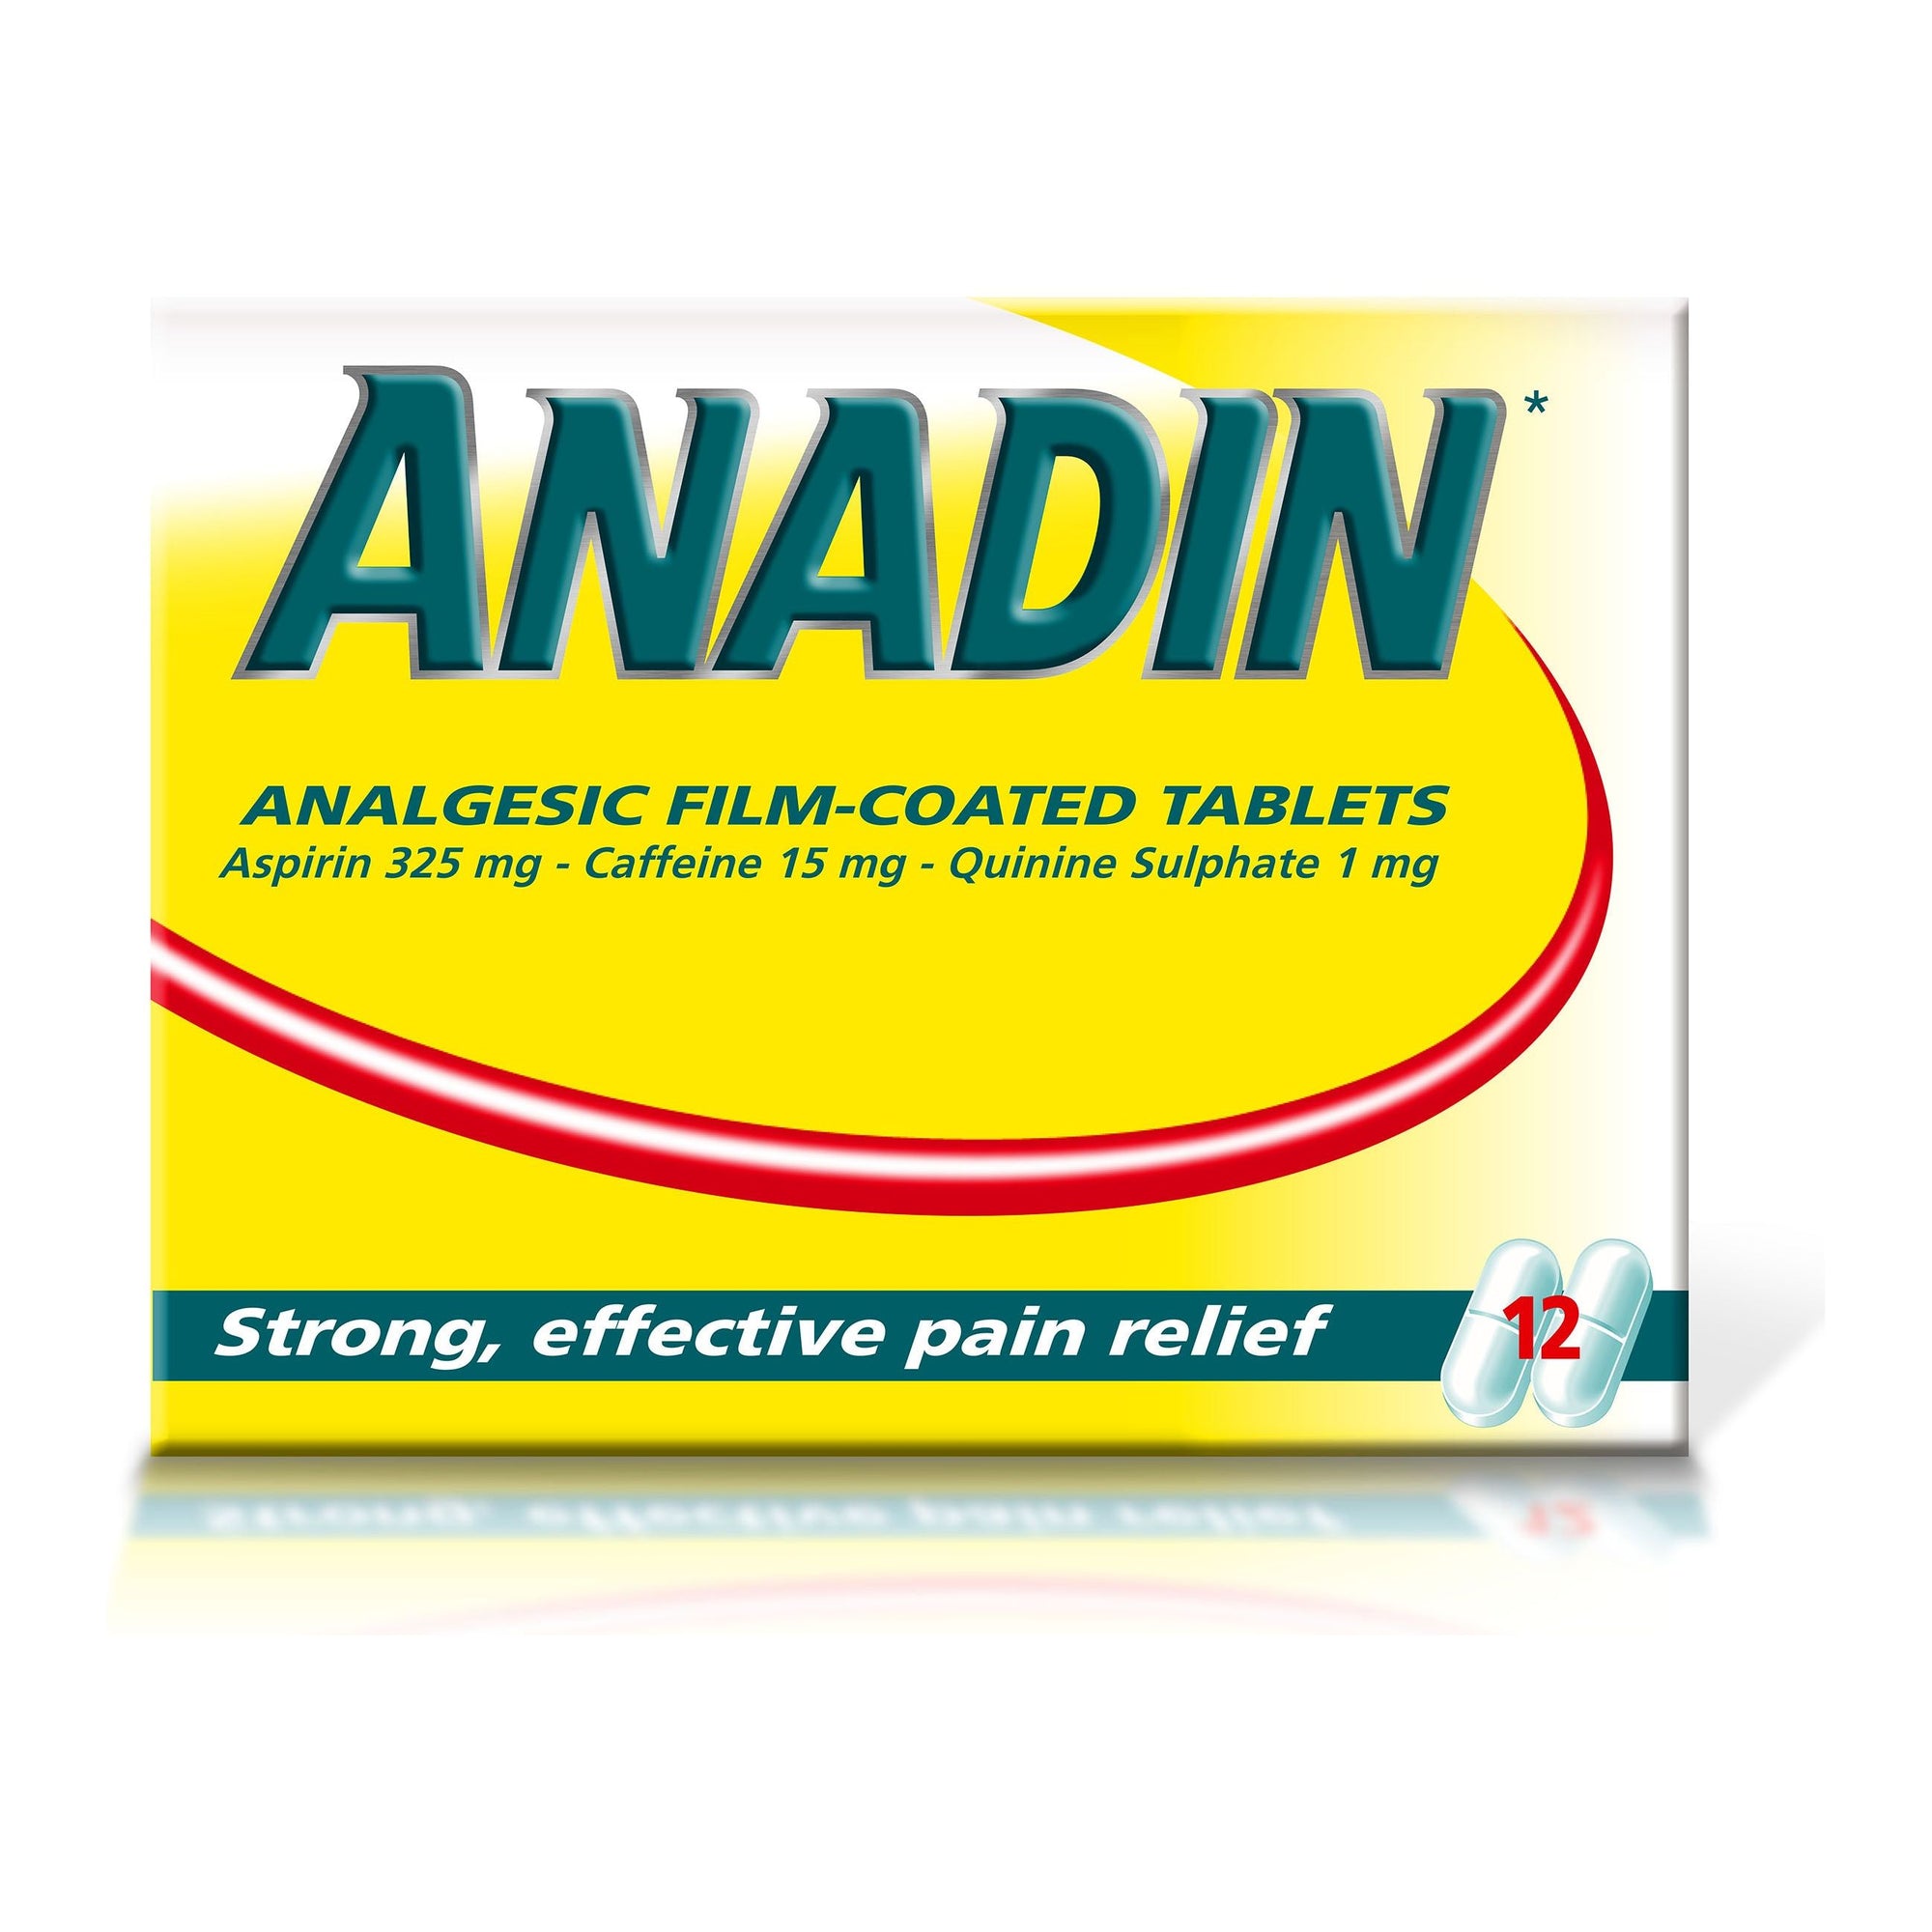 Anadin Original Tablets